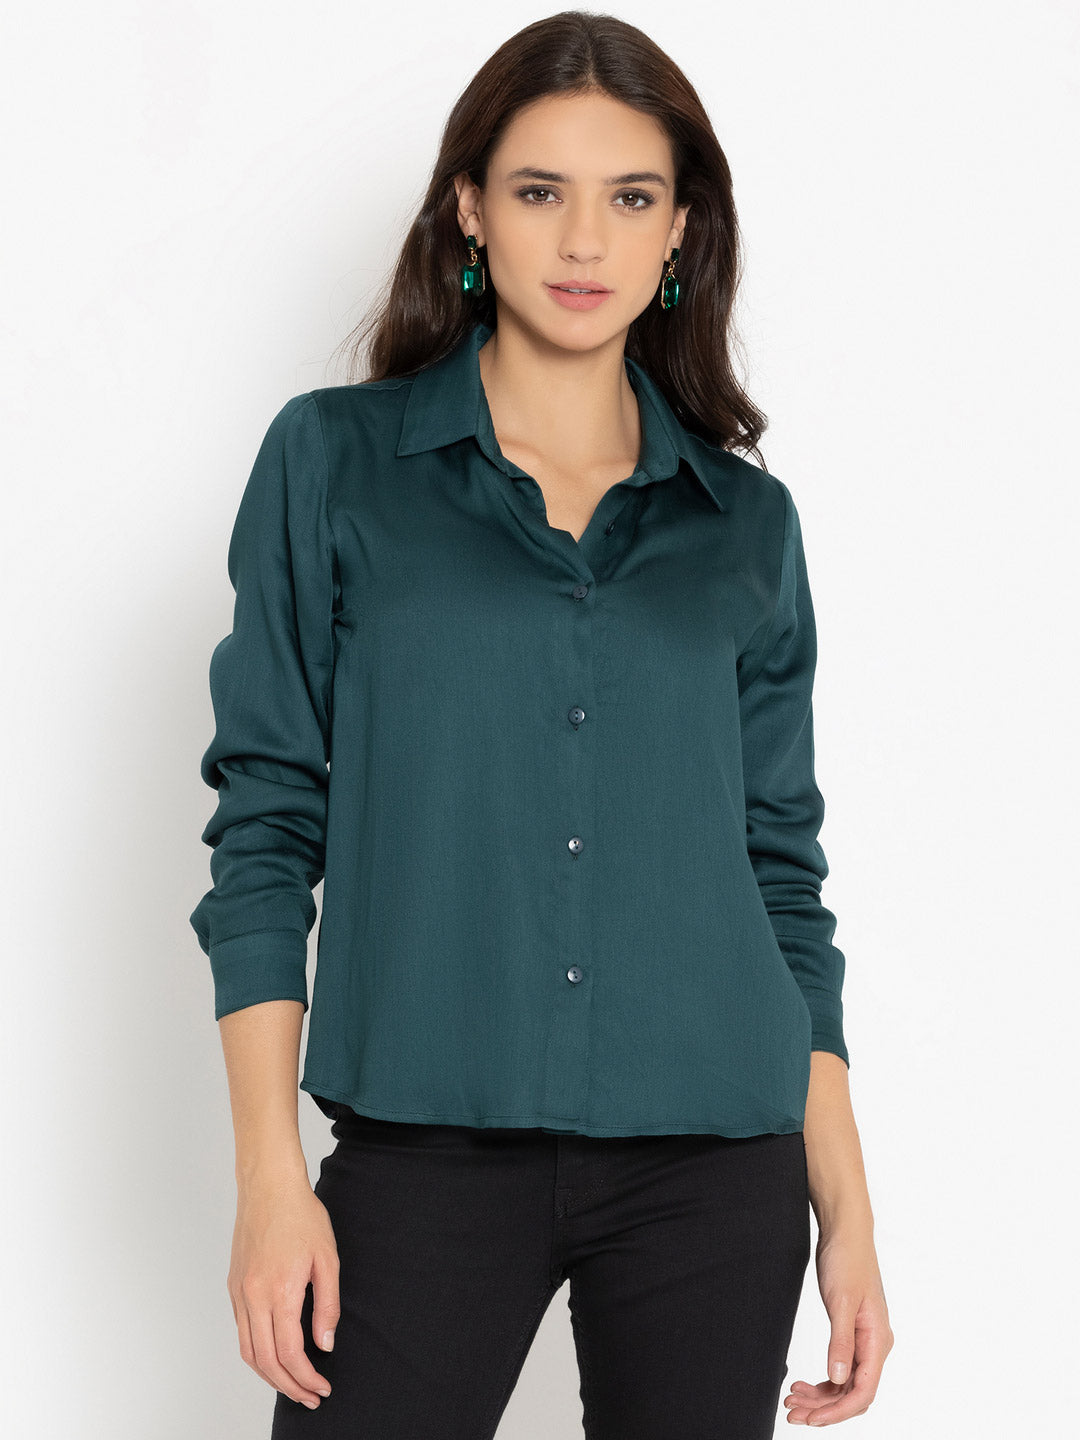 Luxe Green Shirt | Shirts for women – Shaye India